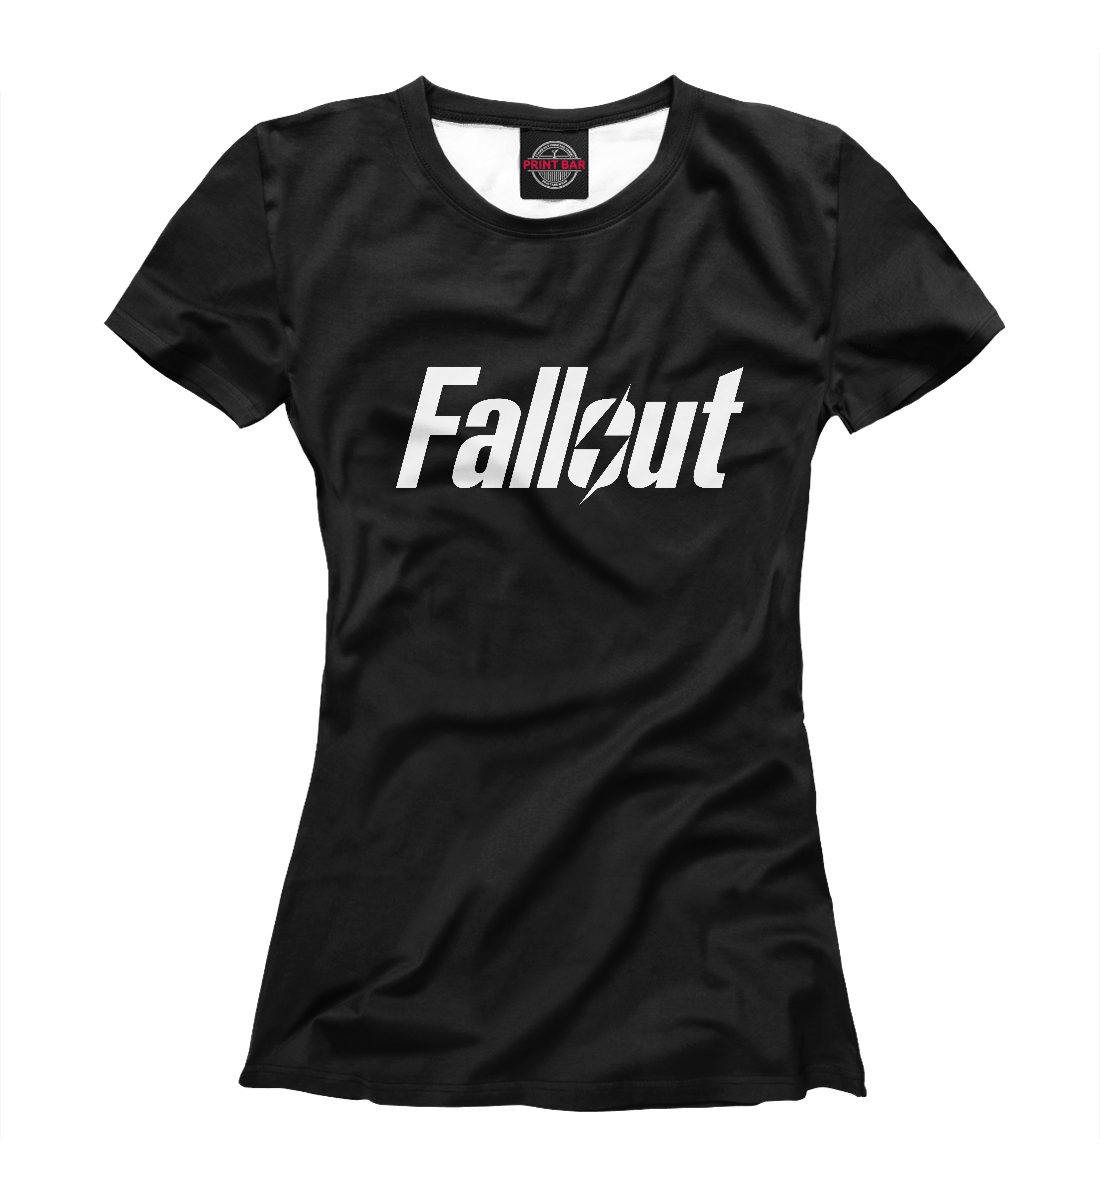 Футболка Fallout для женщин, артикул: FOT-773500-fut-1mp